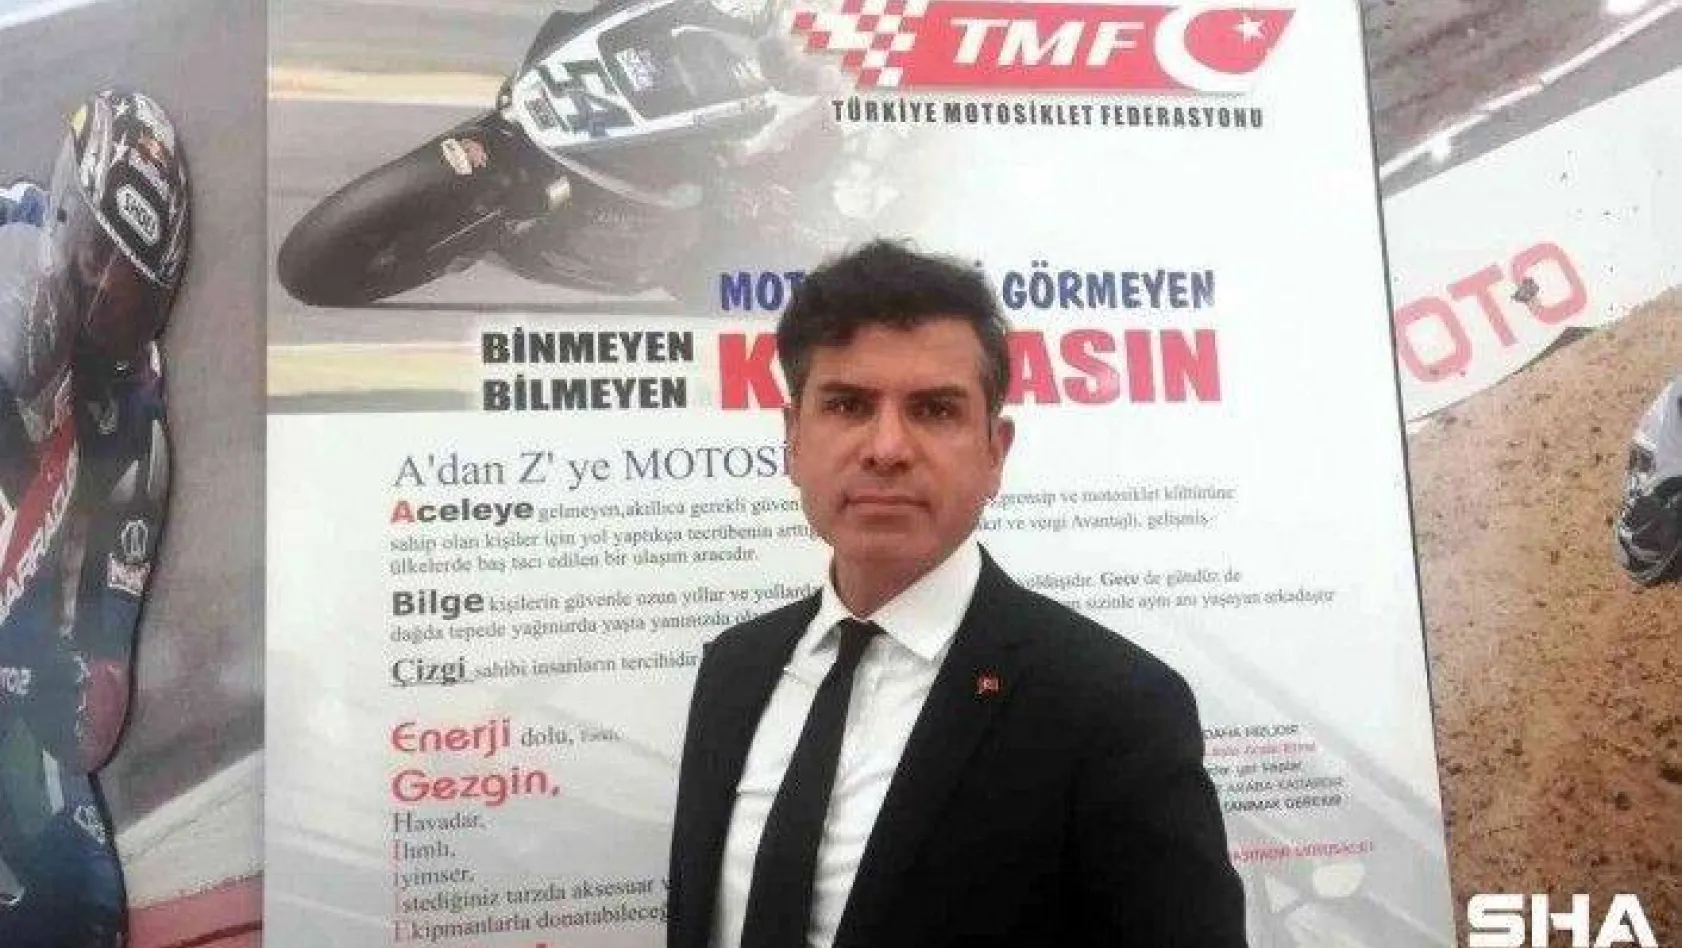 TMF Başkanı Bekir Yunus Uçar: &quotTMF Token ile motosiklet kazanacak"